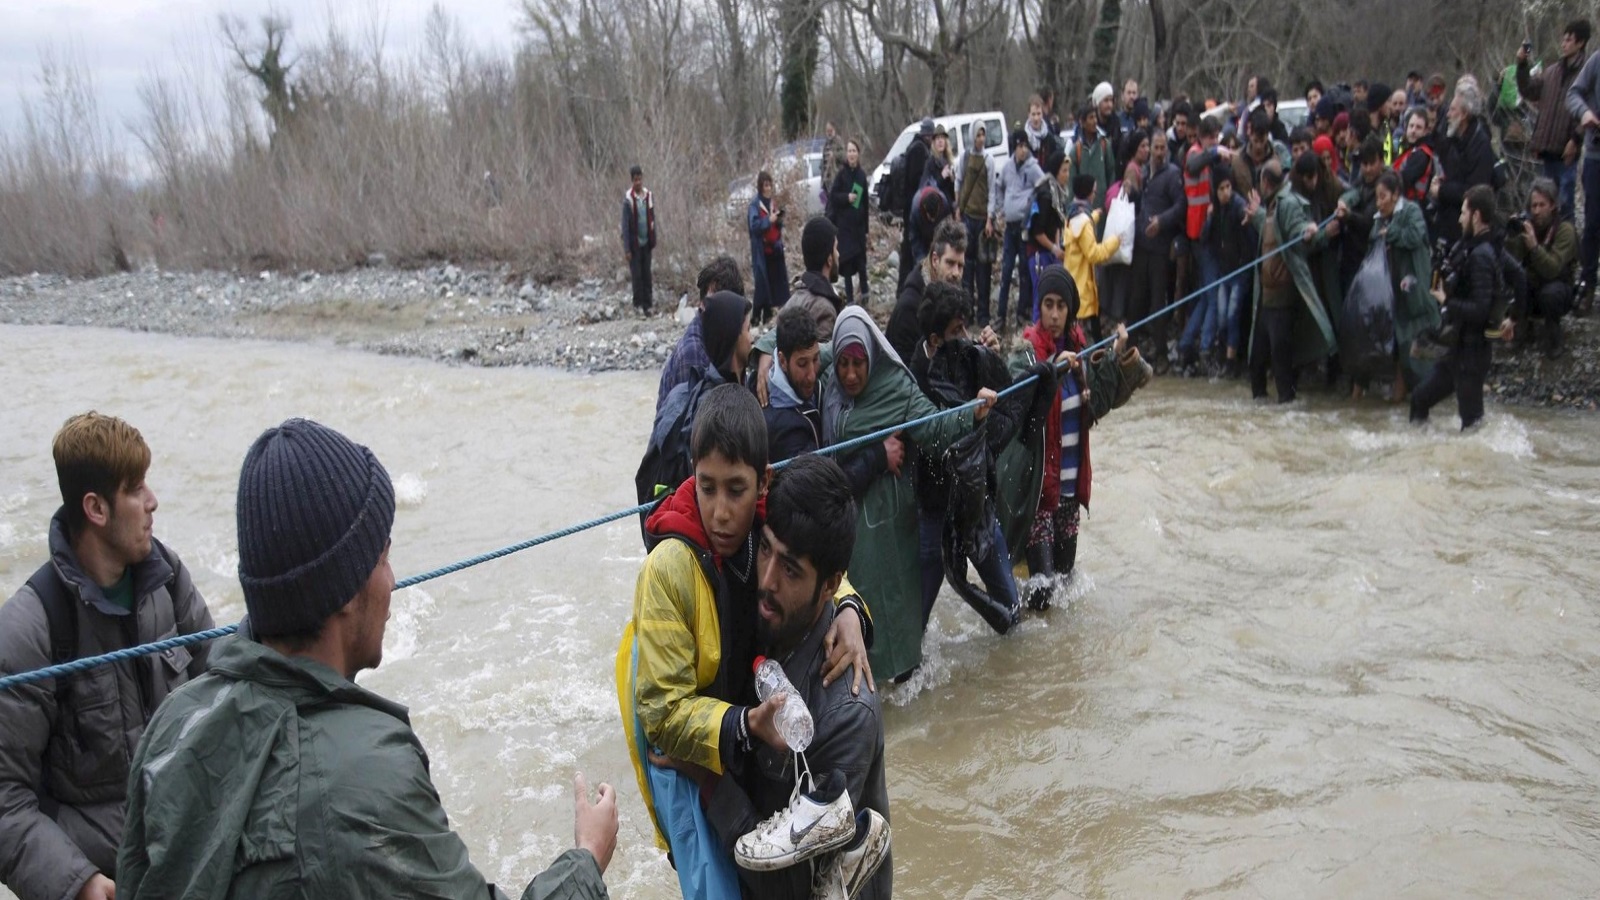 لاجئون يعبرون النهر قرب الحدود اليونانية المقدونية غربي قرية إديوميني اليونانية أوائل 2014 (رويترز)